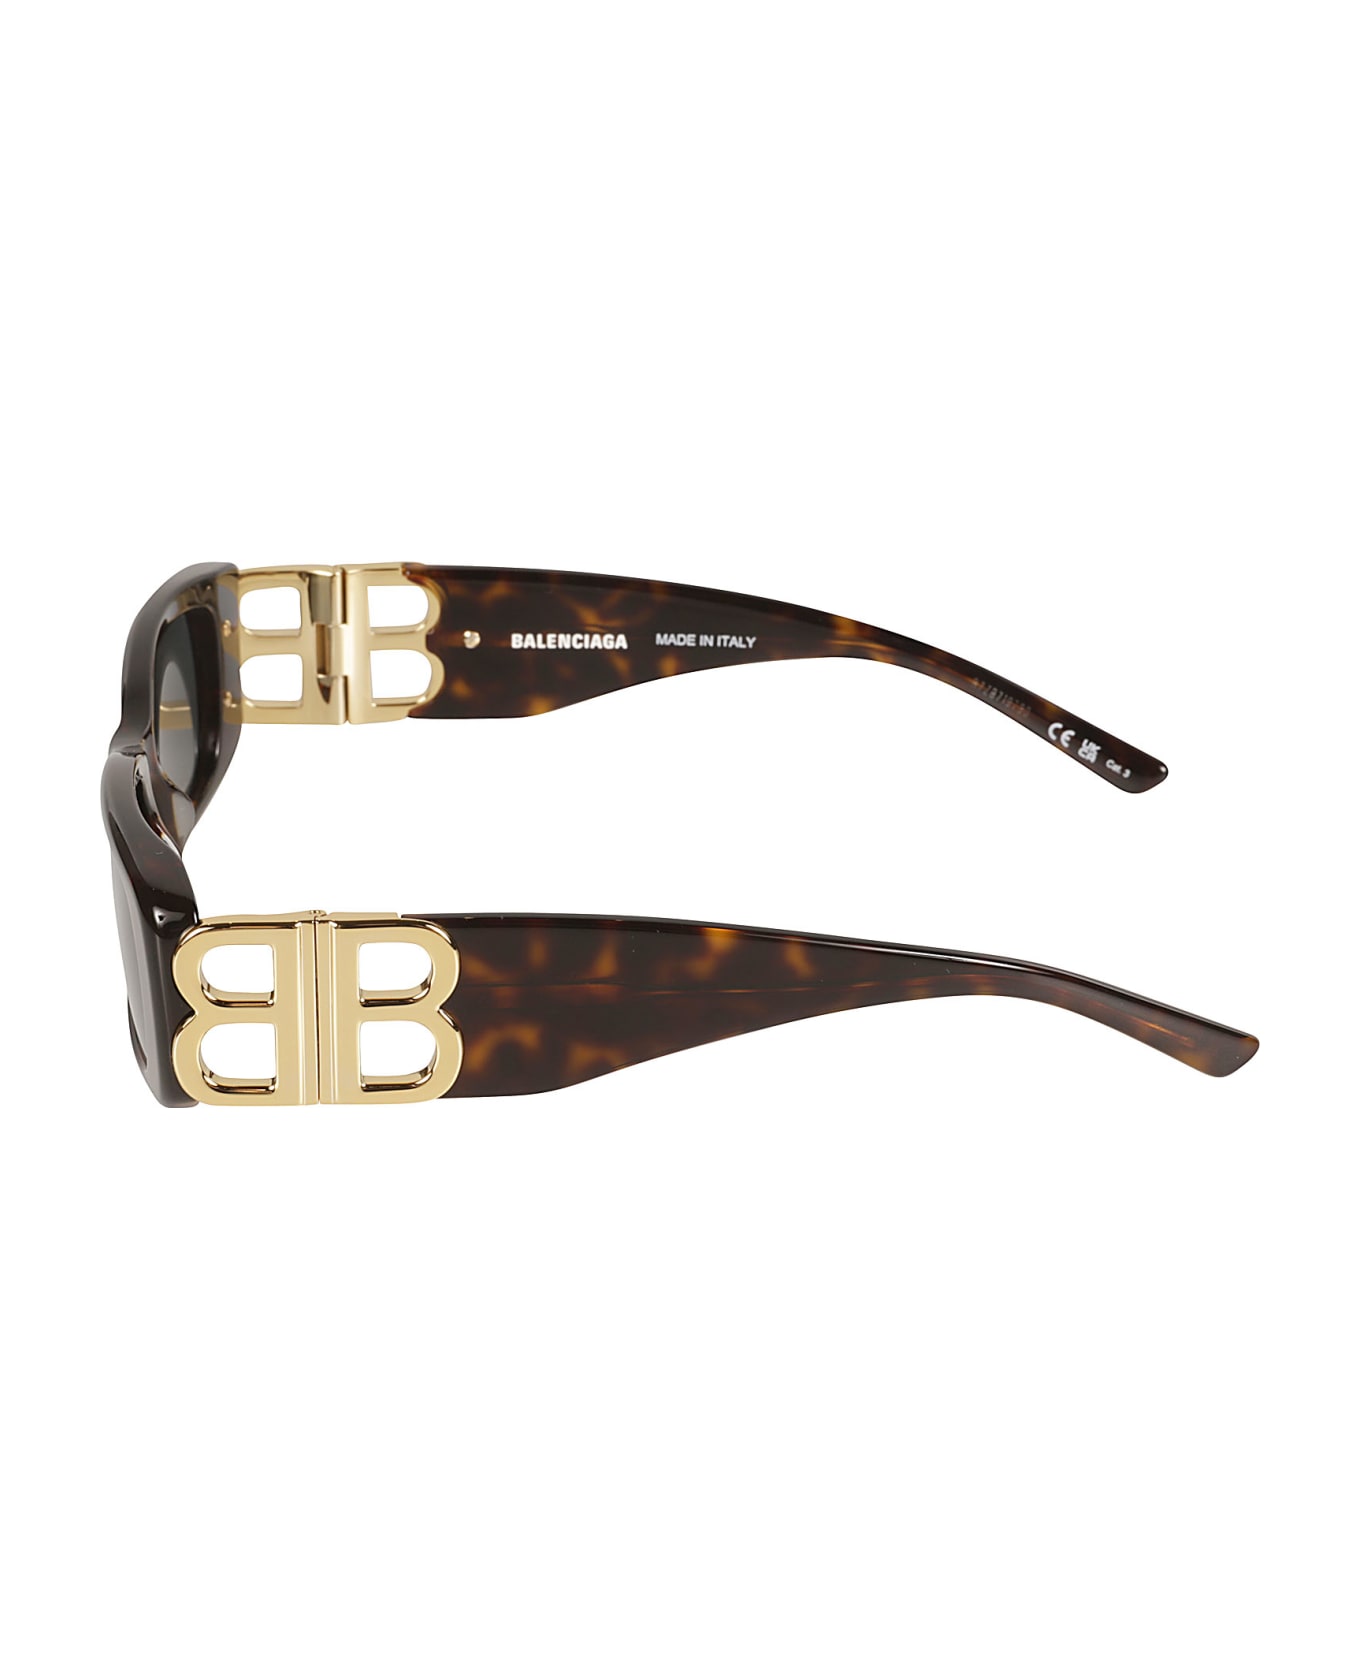 Balenciaga Eyewear Rectangular Frame Logo Sunglasses - Havana/Gold/Green サングラス